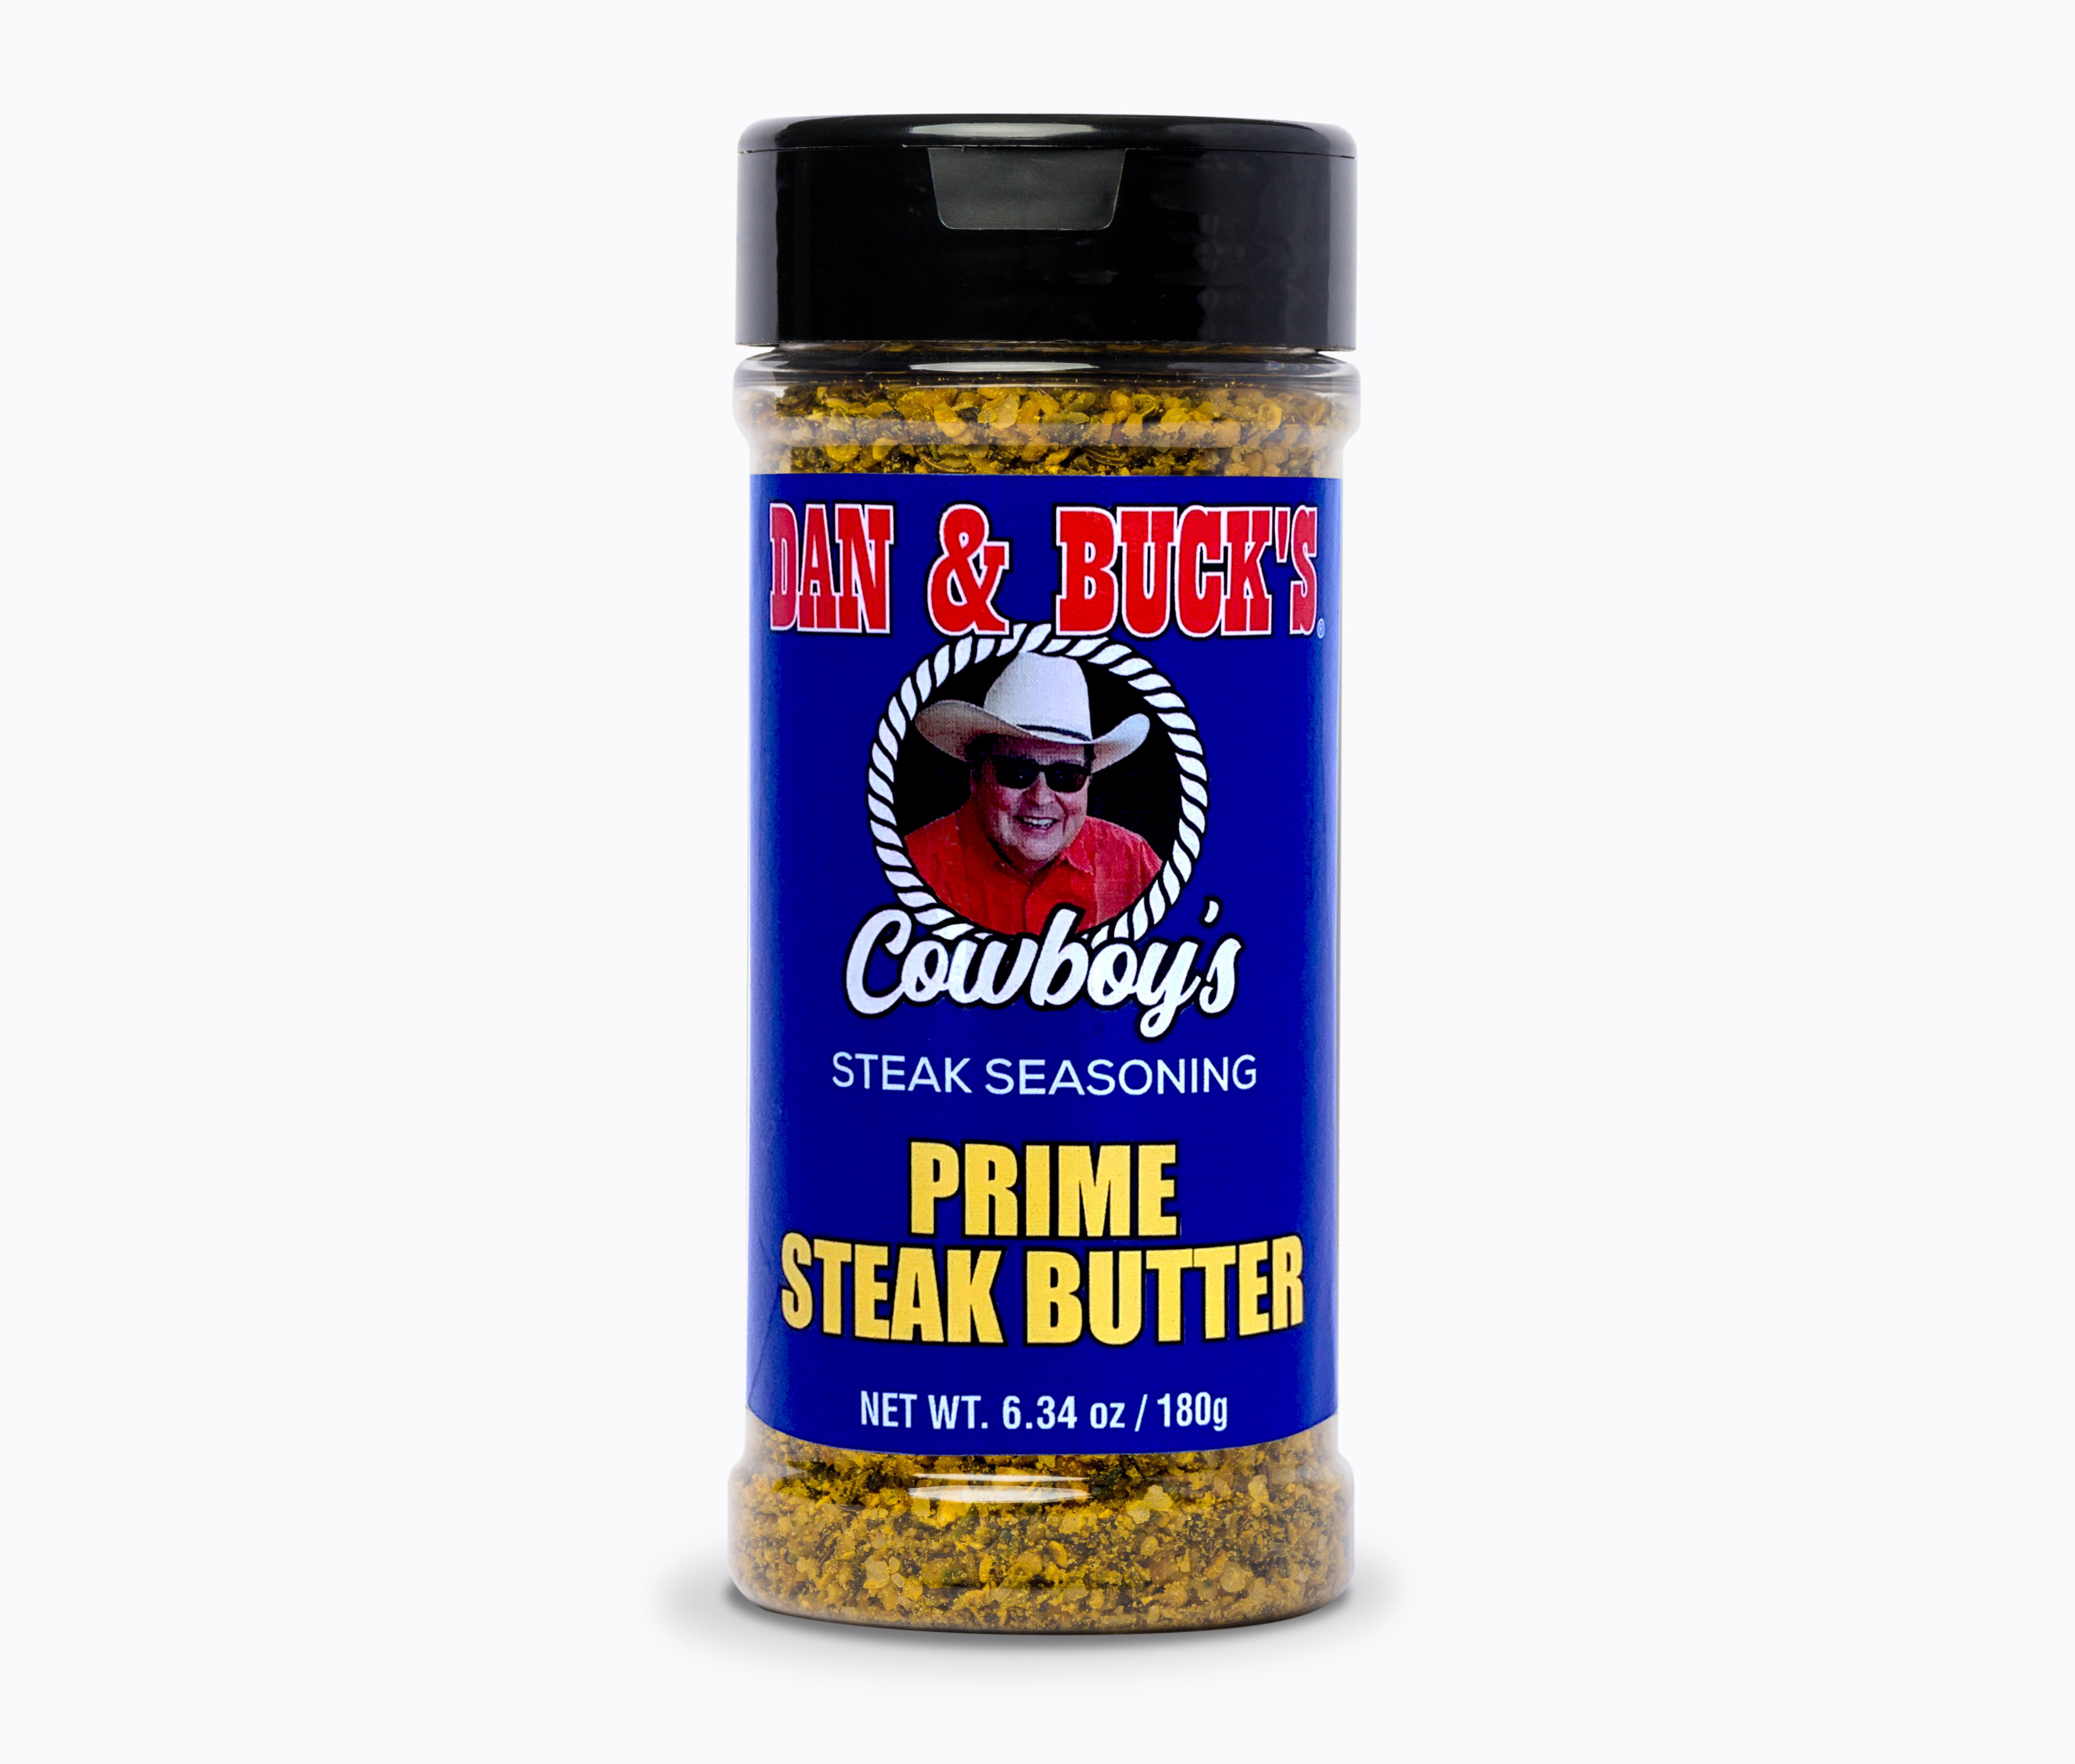 Prime Steak Butter